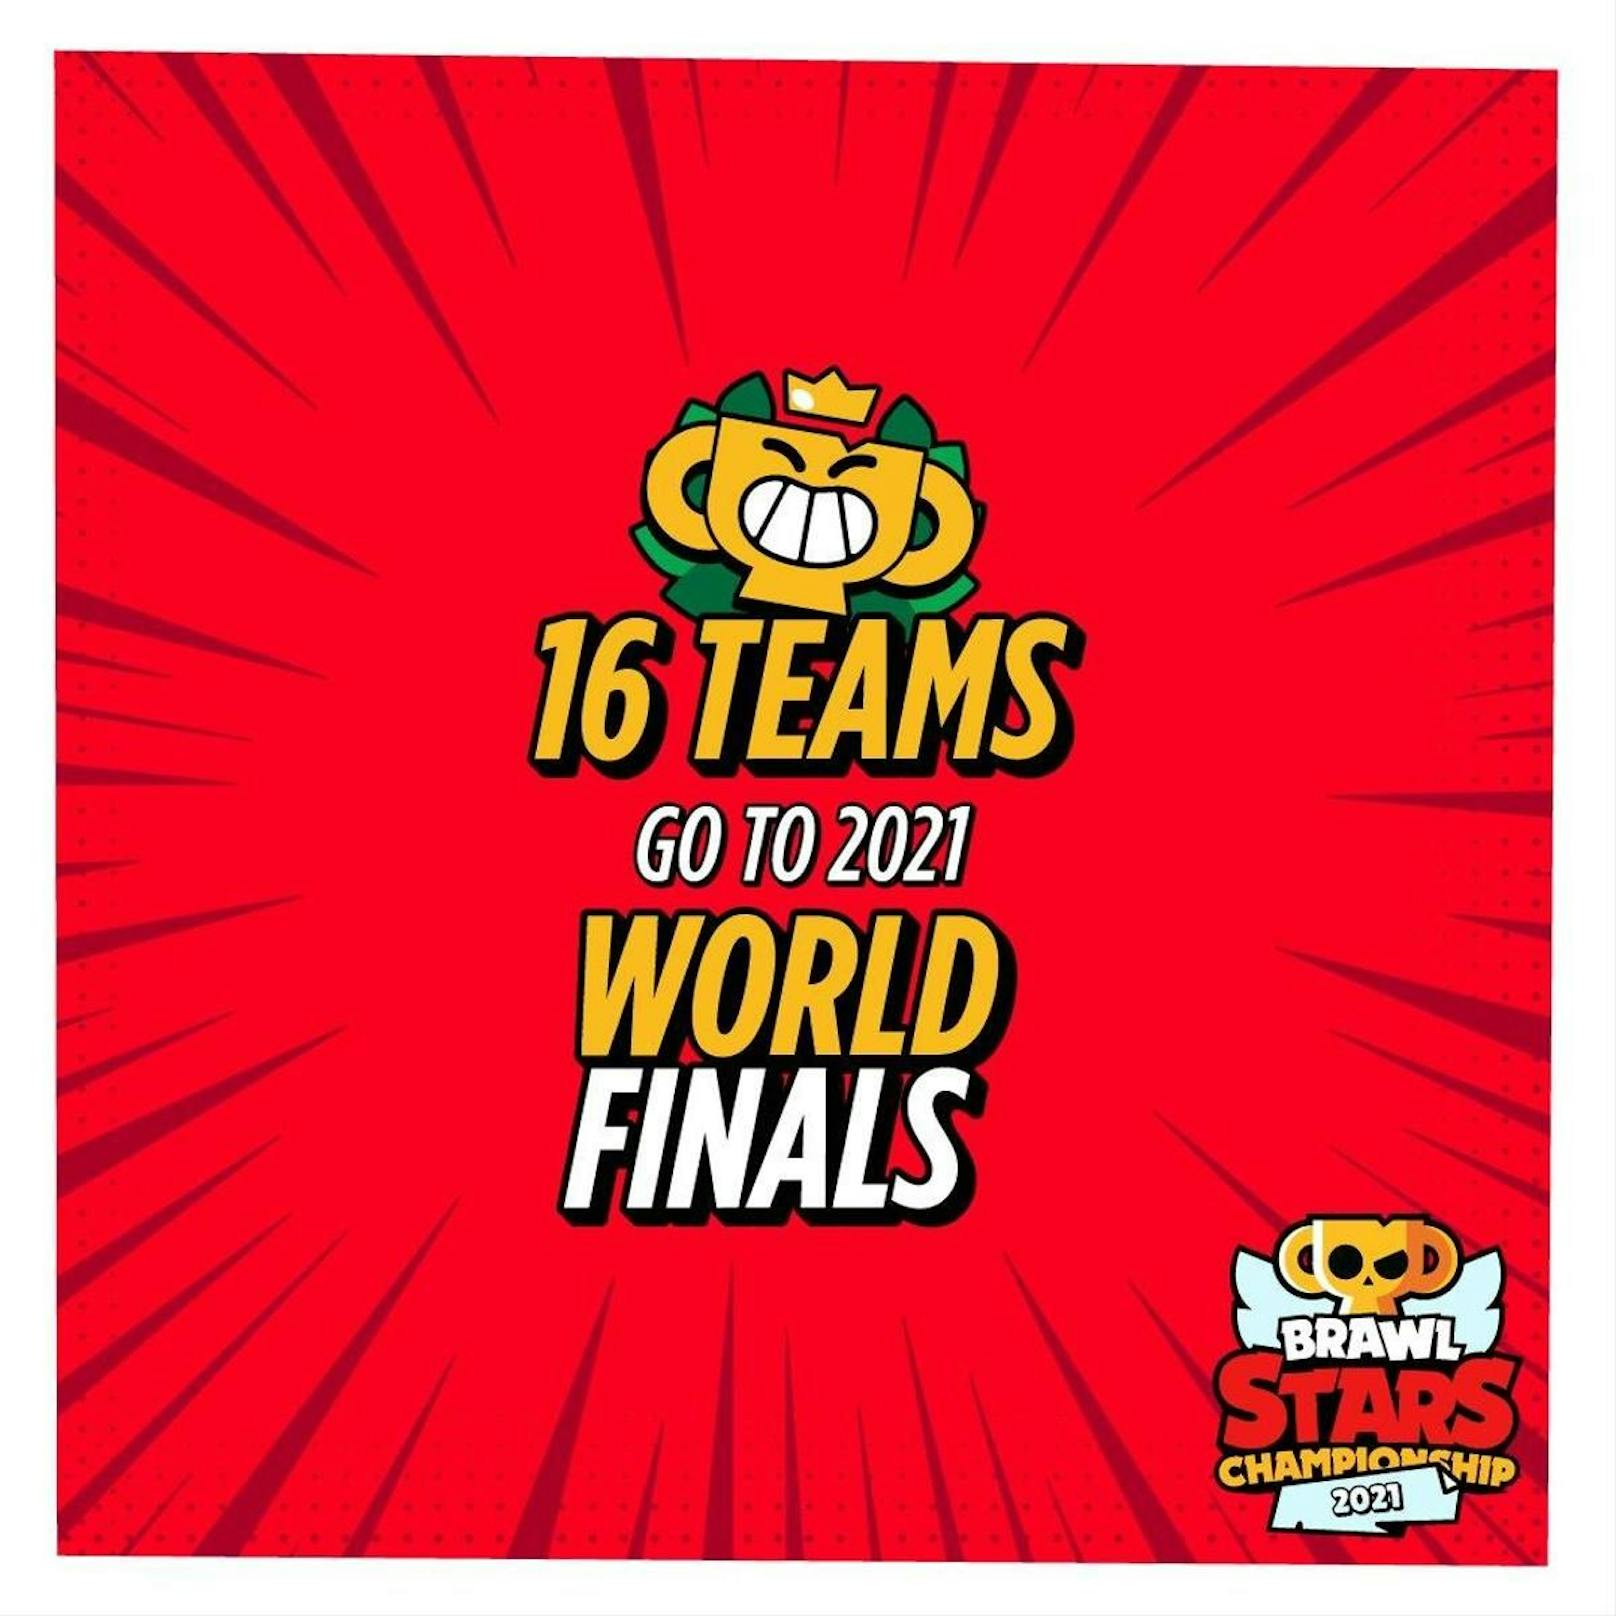 Die besten 16 Teams aus aller Welt (fünf in Europa) werden zu den World Finals eingeladen.